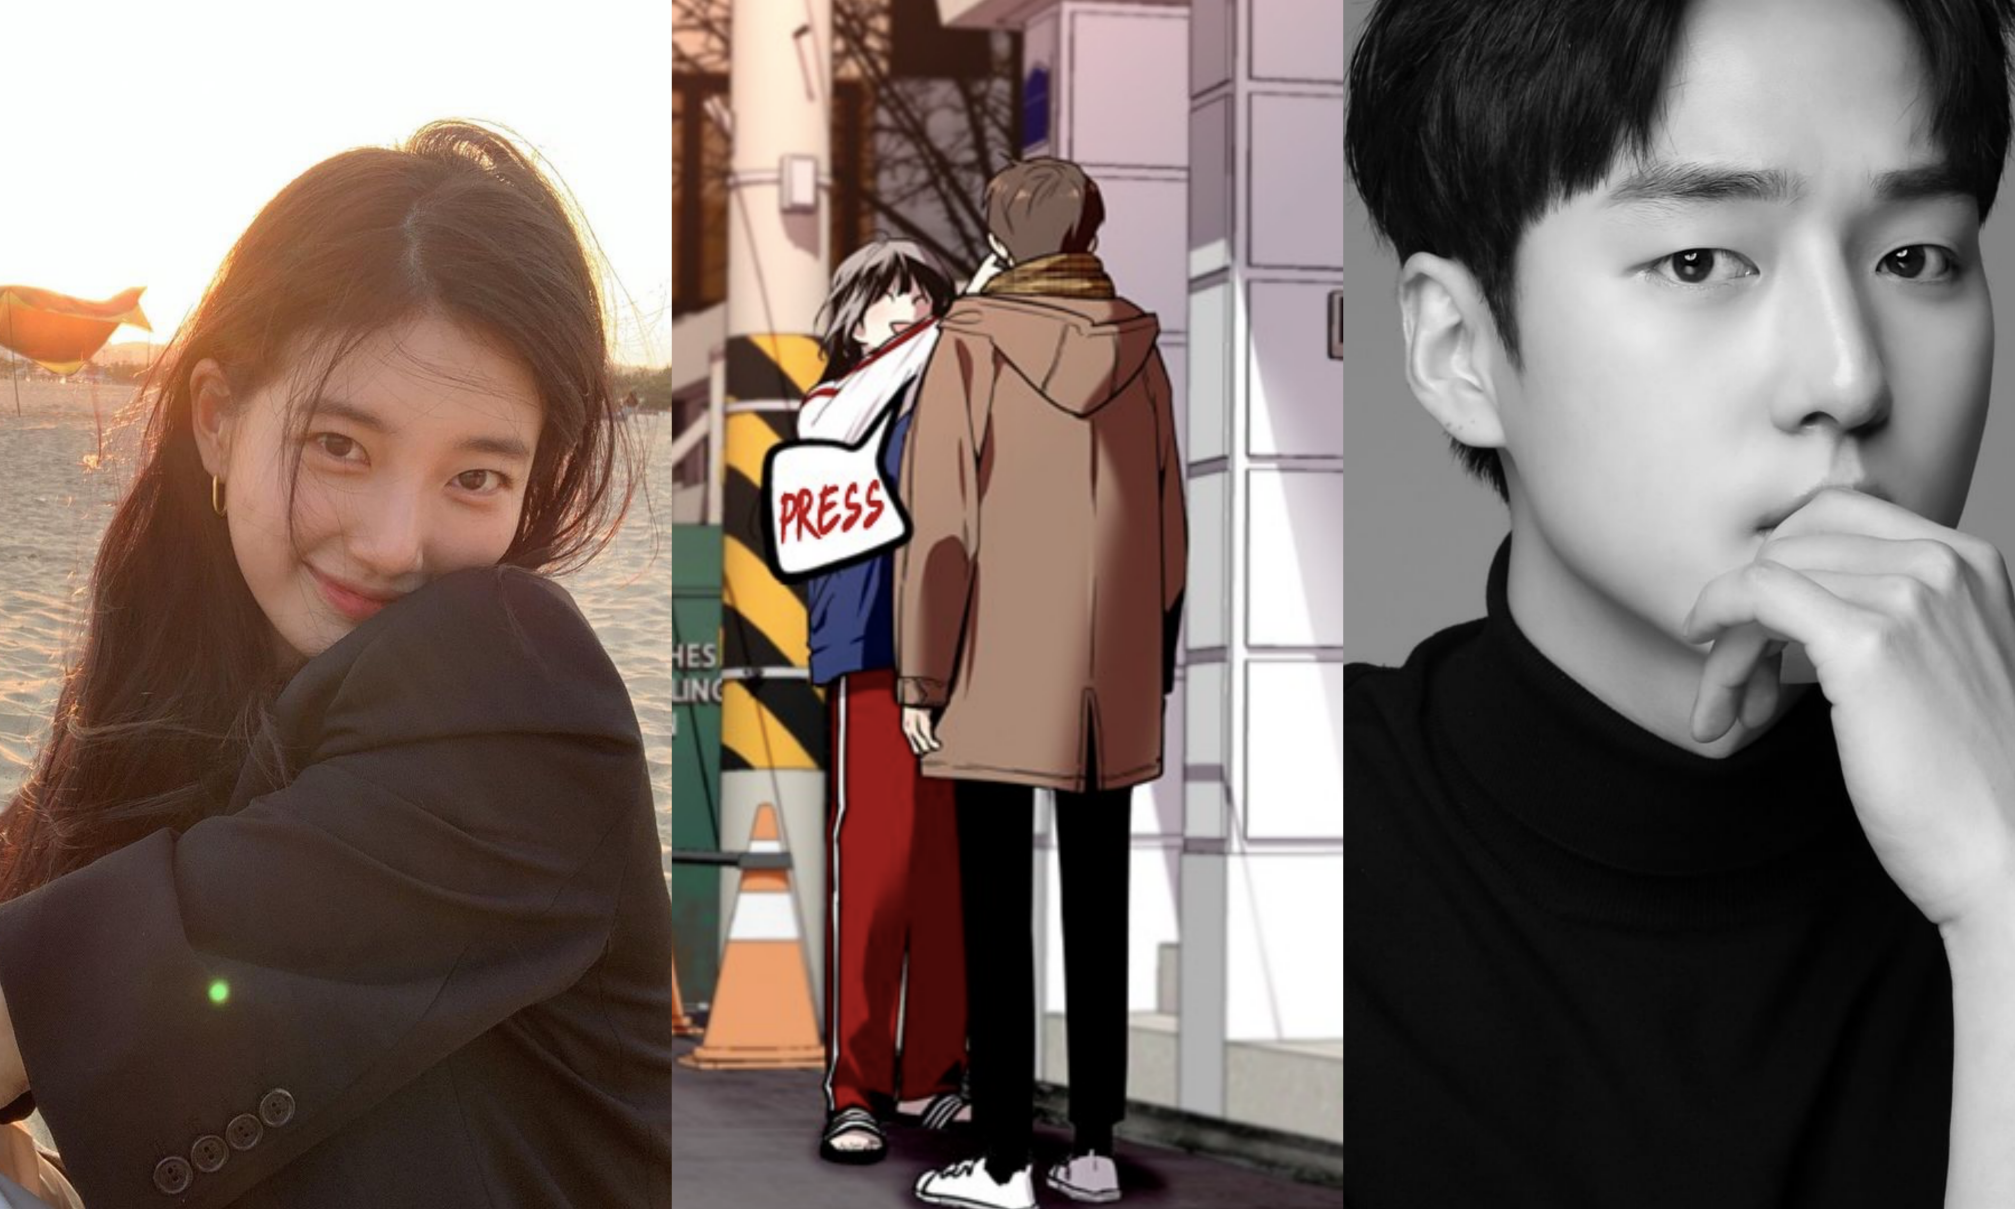 Doona!: Here's when Netflix K-drama starring Bae Suzy is releasing